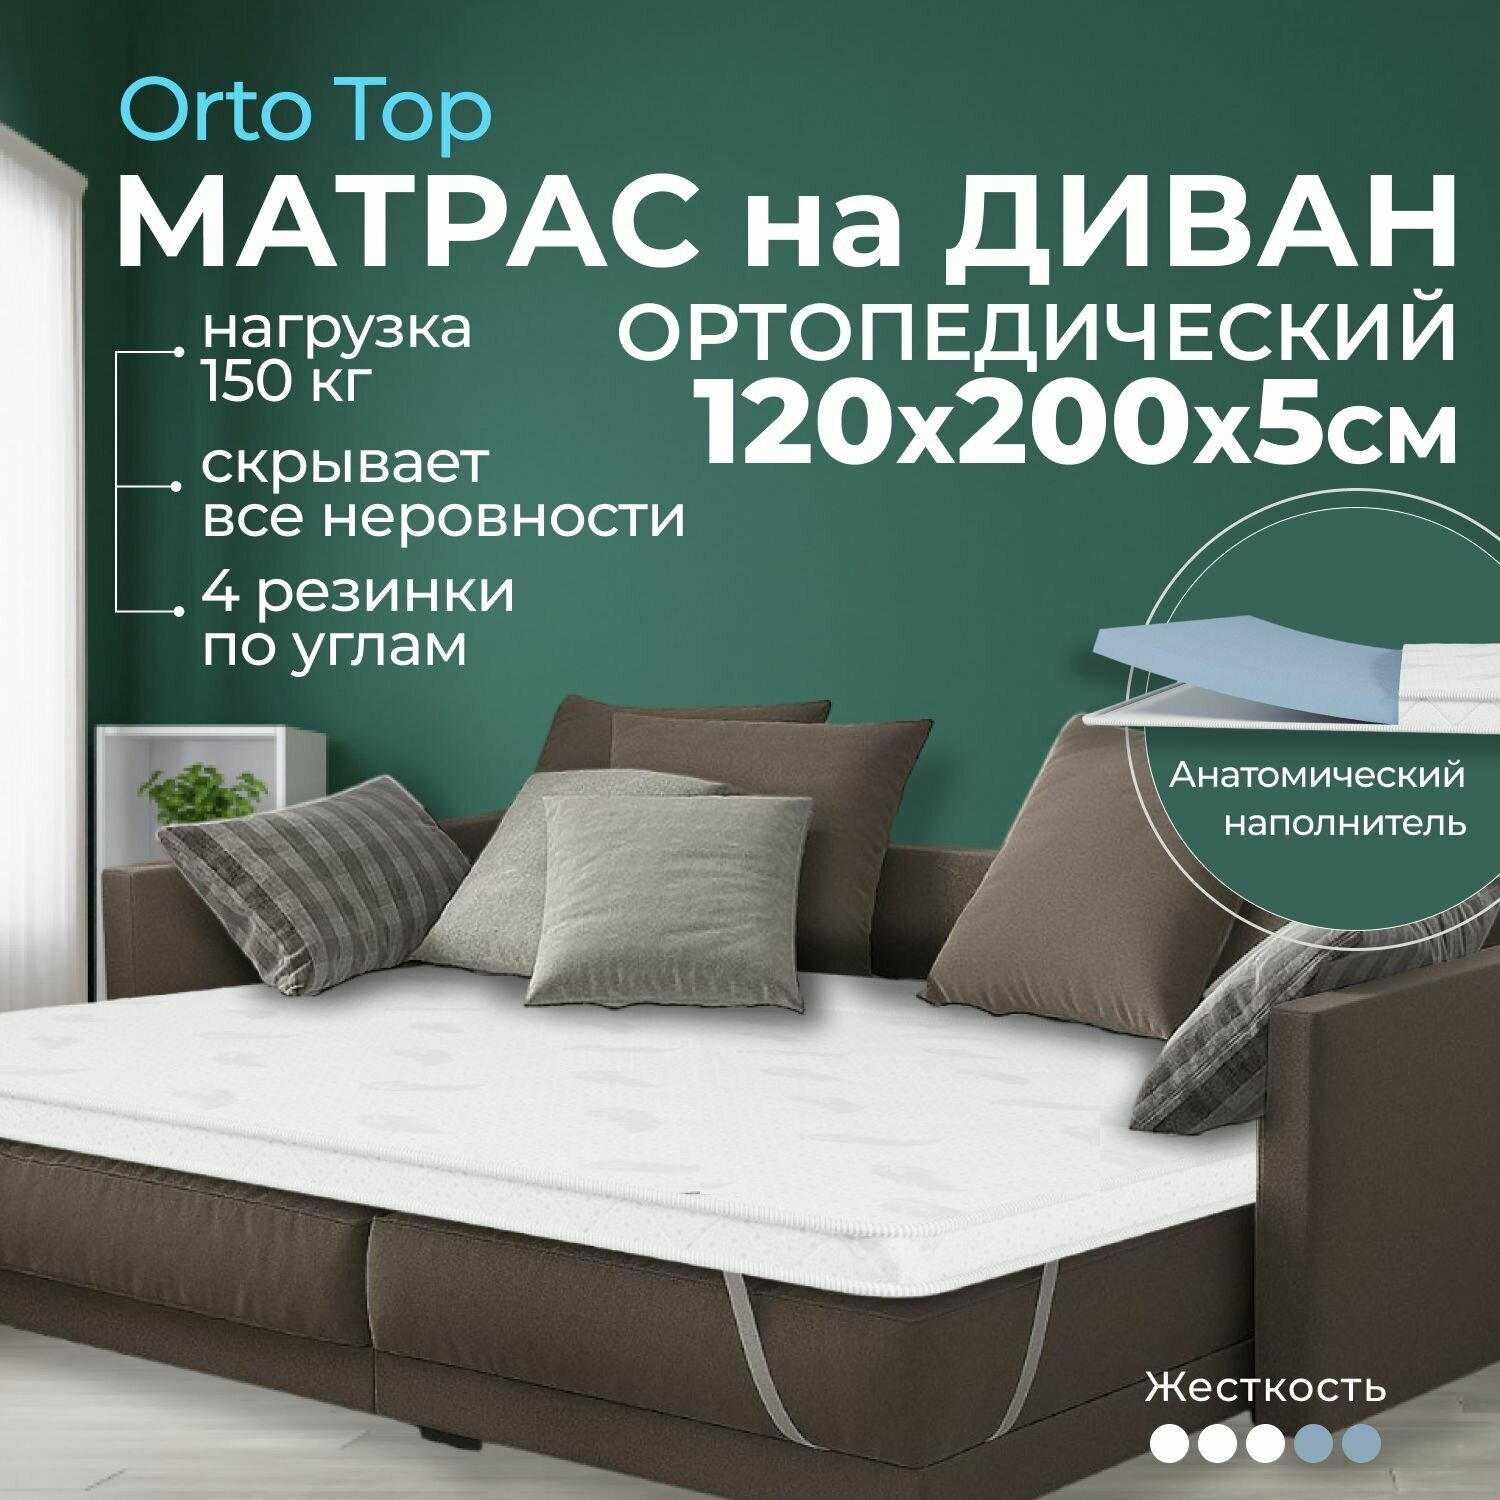 Мягкий матрас на диван 120 х 200, 5 см BEDDO Orto Top, двусторонний, беспружинный с ортопедическими свойствами